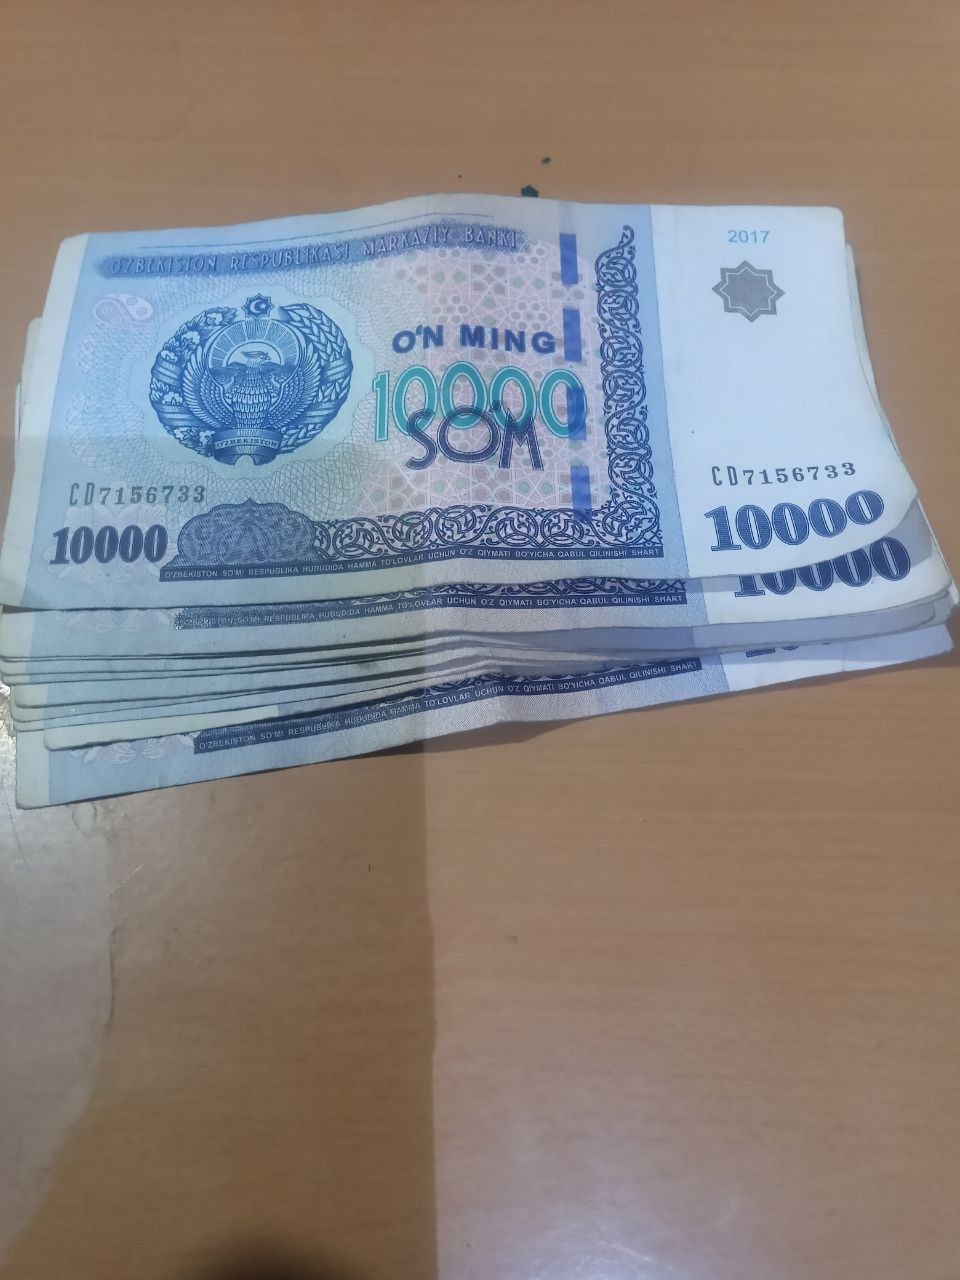 2 000 000 сум. 100 000 Сум. 61 000 Сум. 3d пачка узбекских сумов. 1 150 000 Сум в рублях.